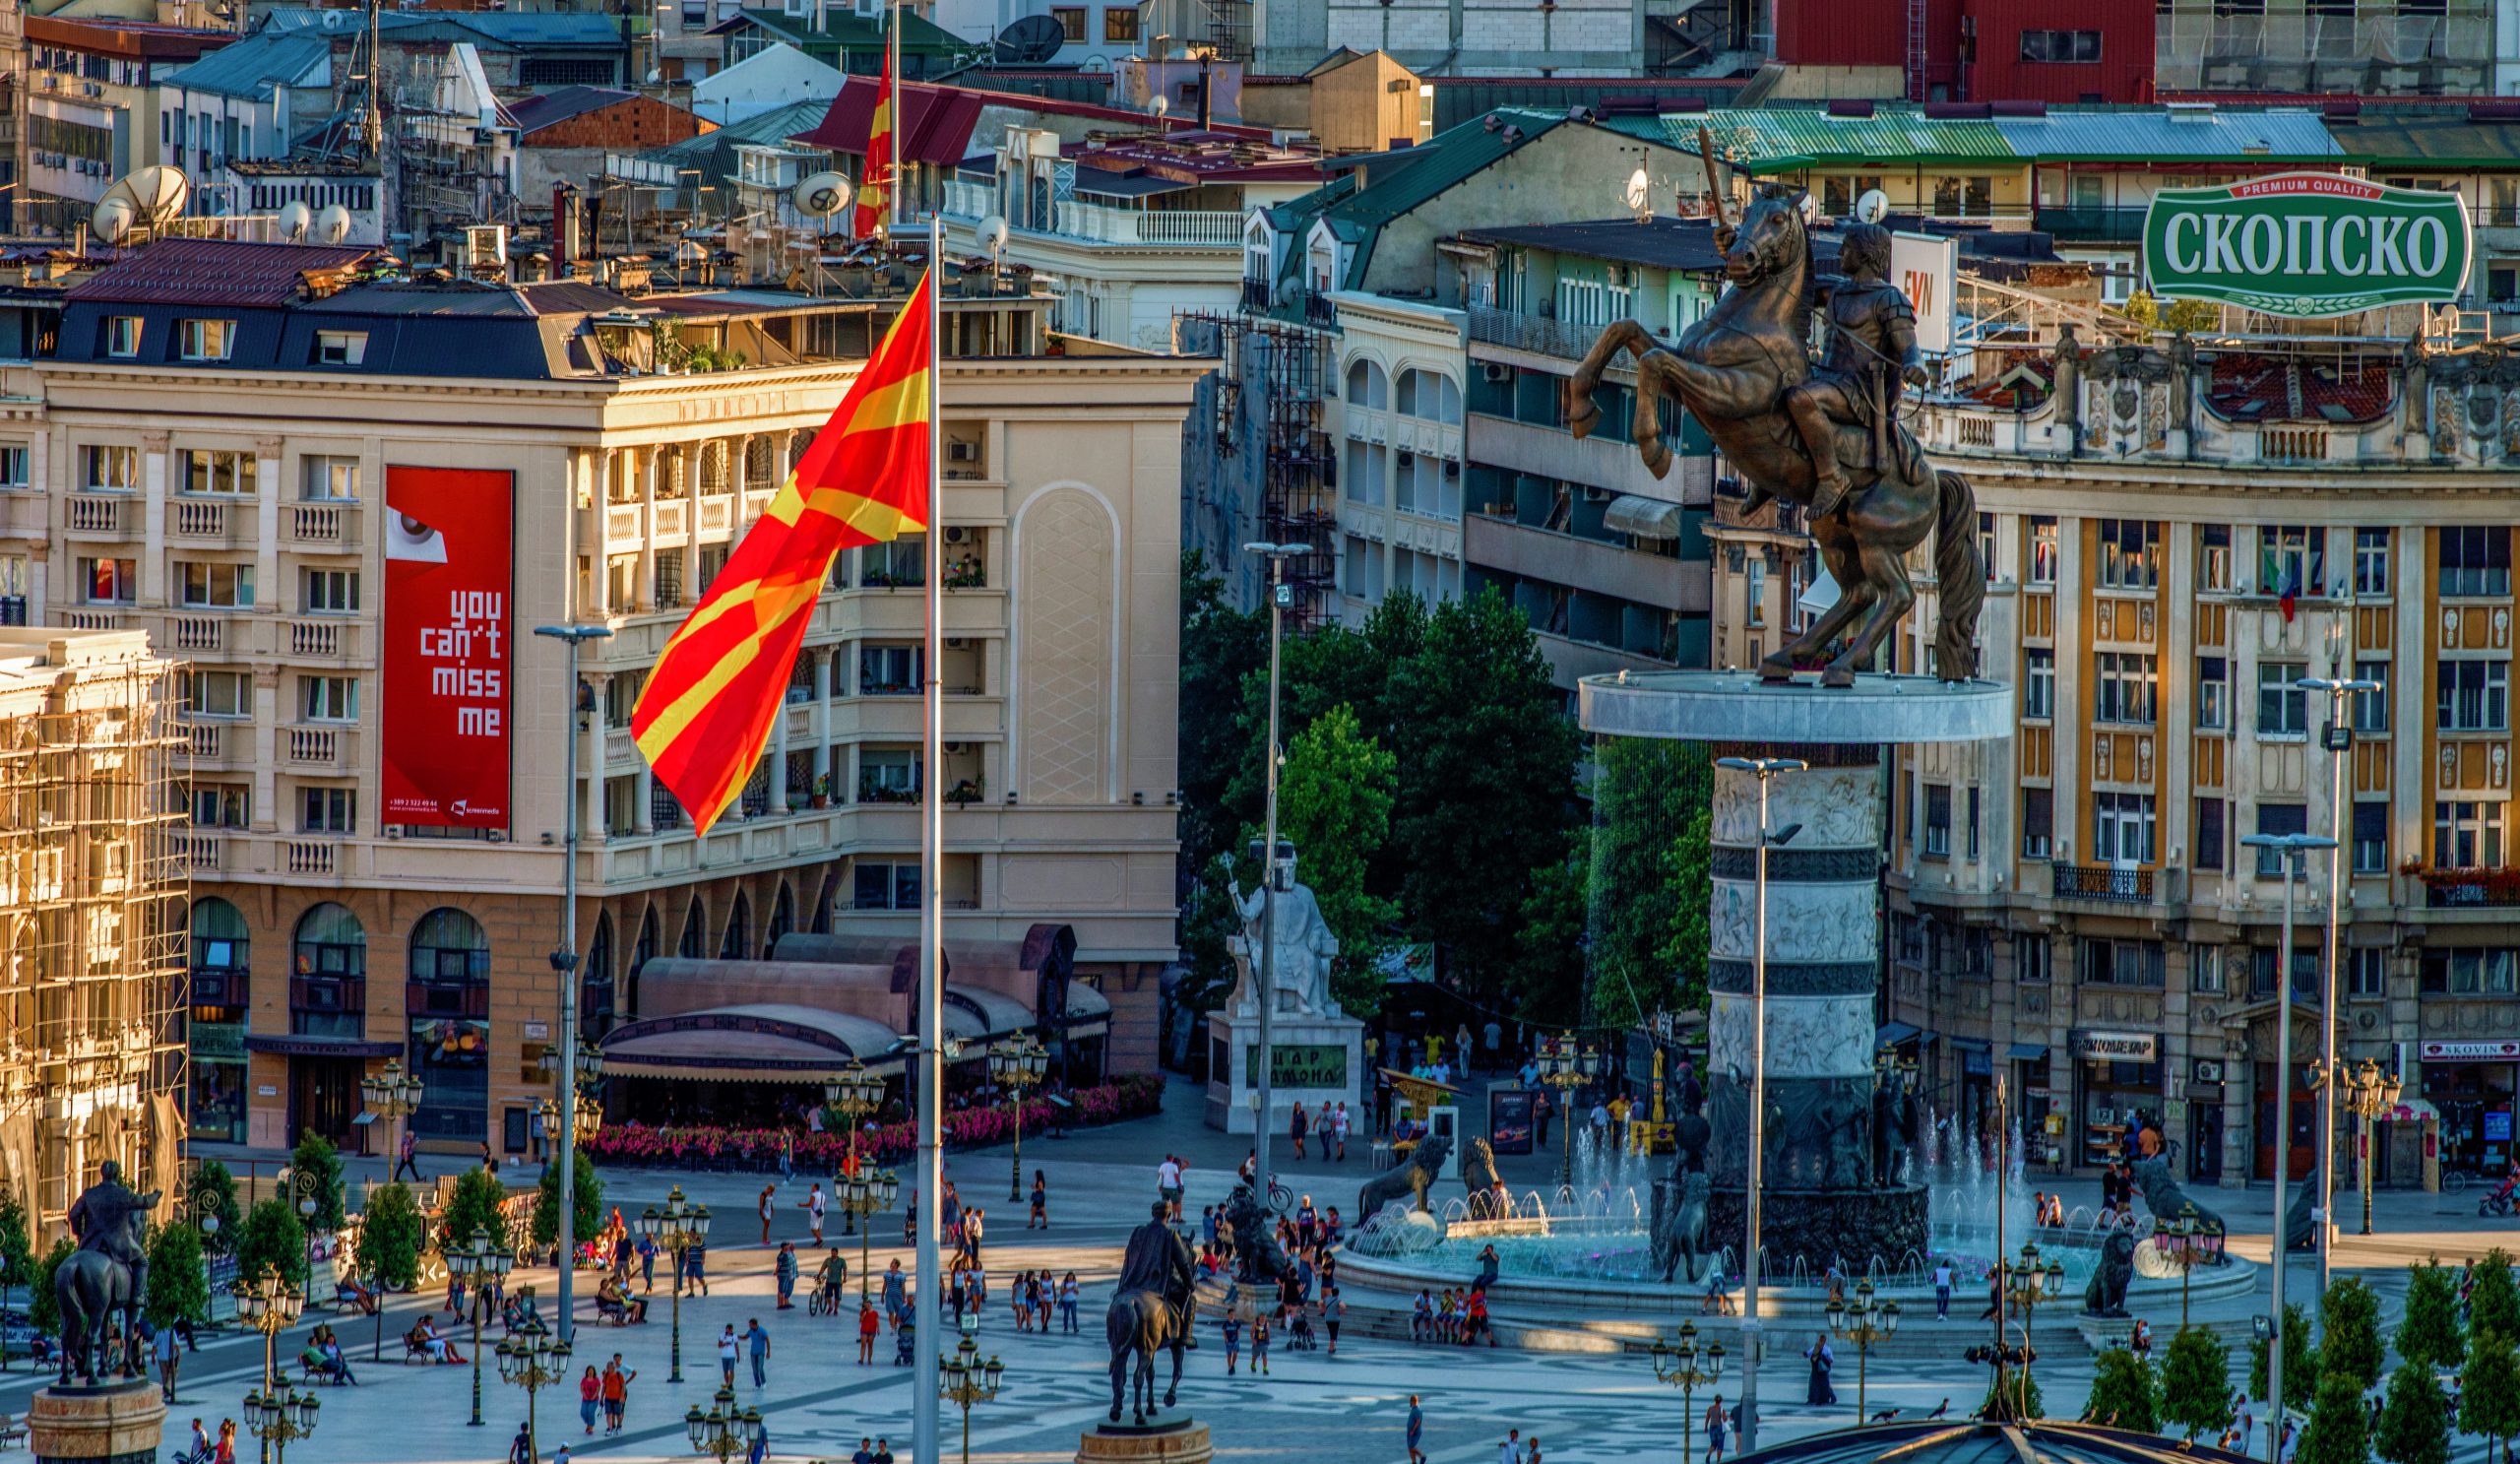 Macedonia Square in Skopje